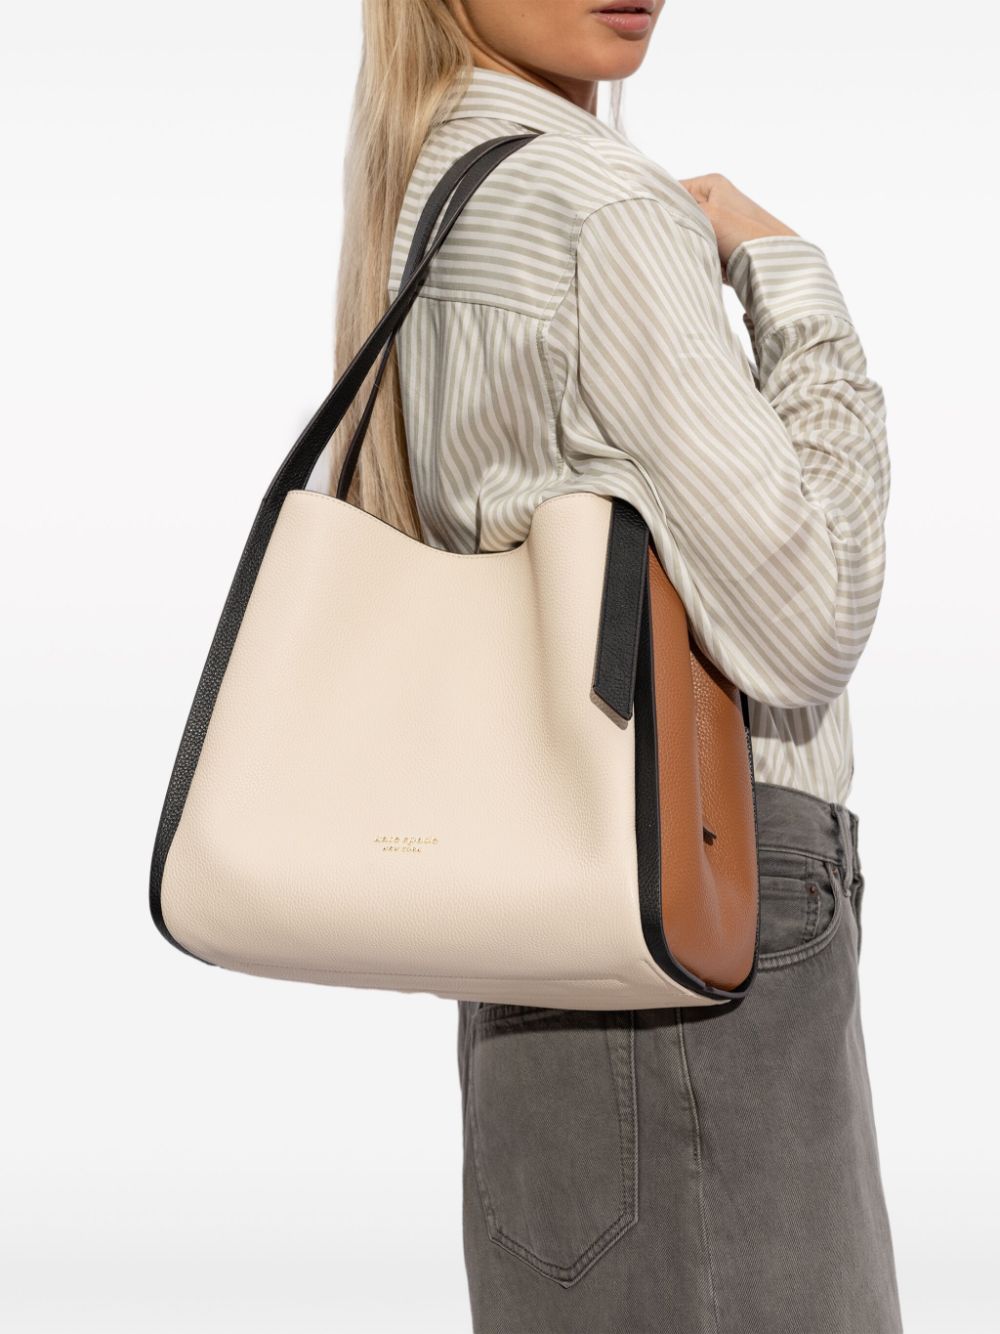 Kate Spade large Knott leather shoulder bag - Beige